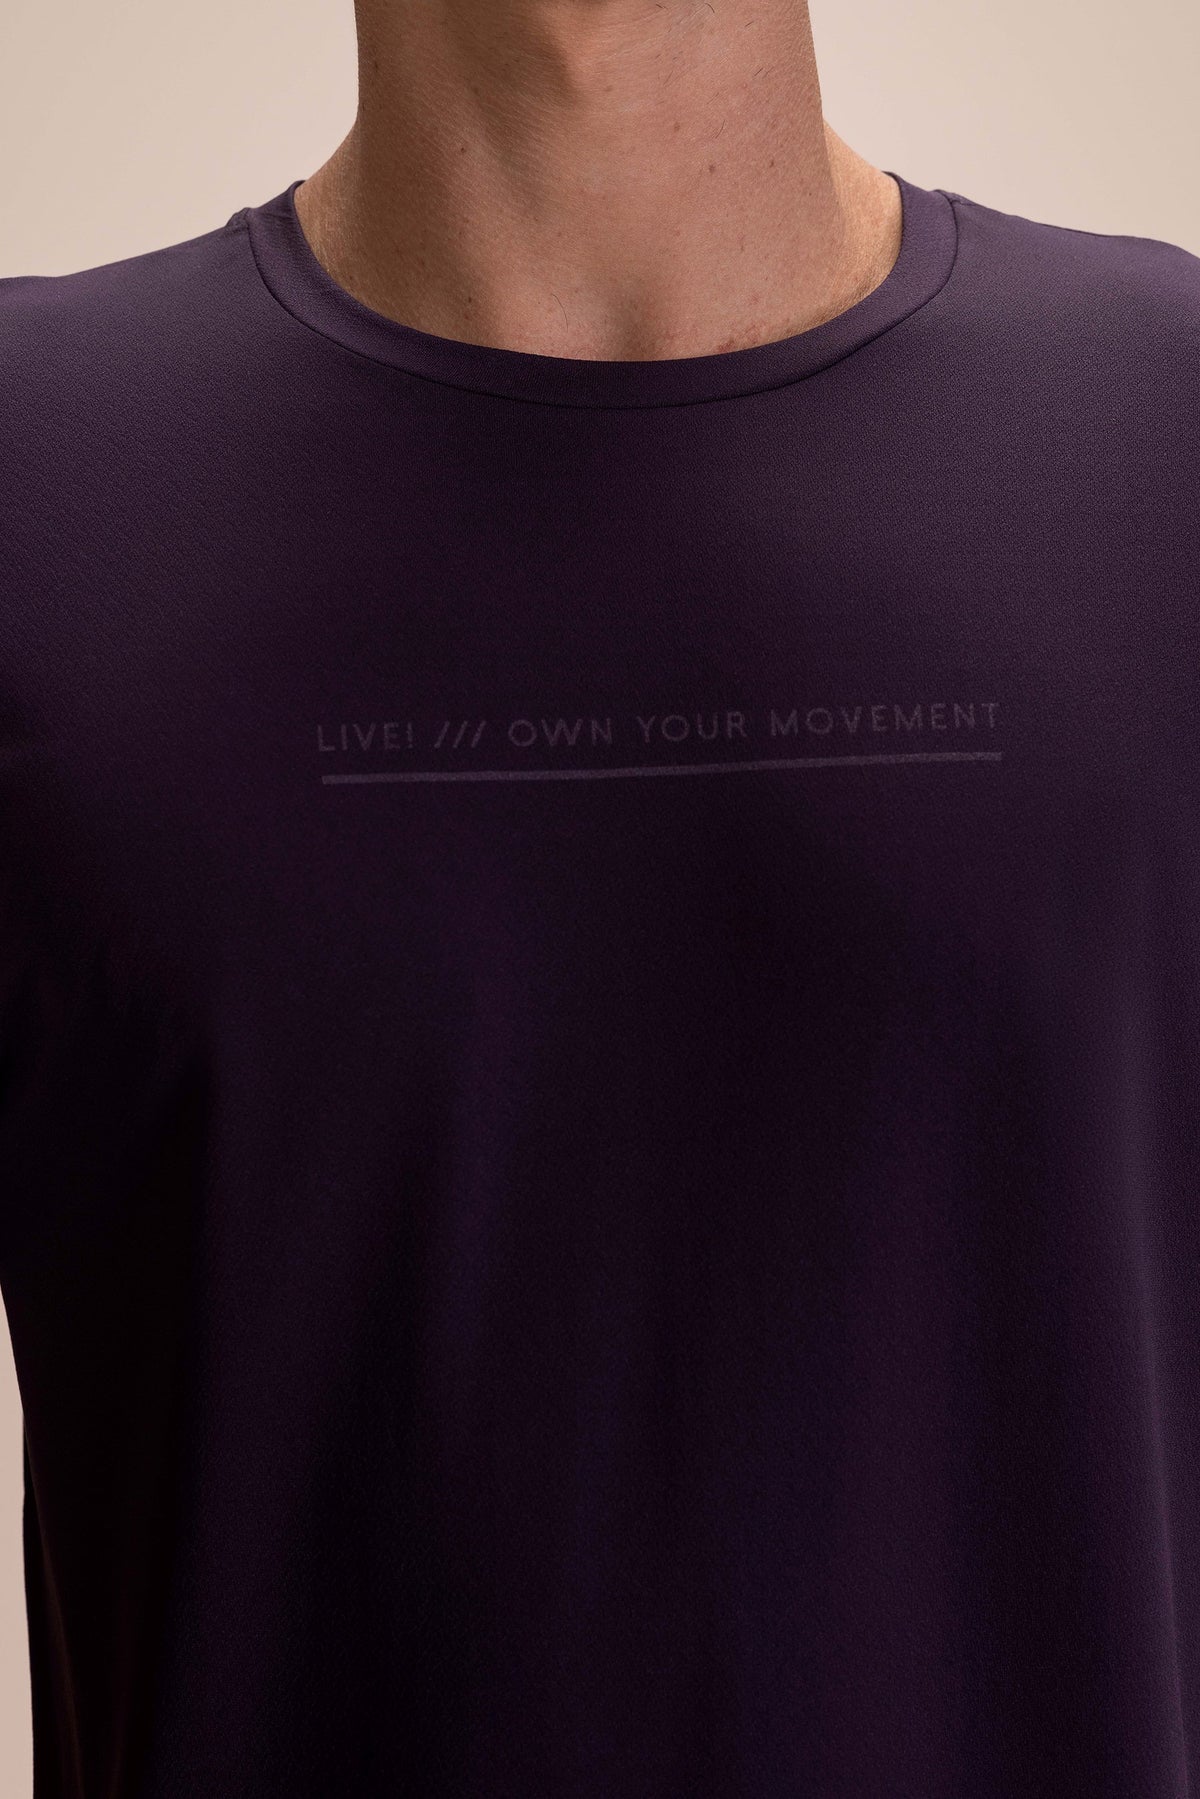 Comfy Movements Men's T-shirt